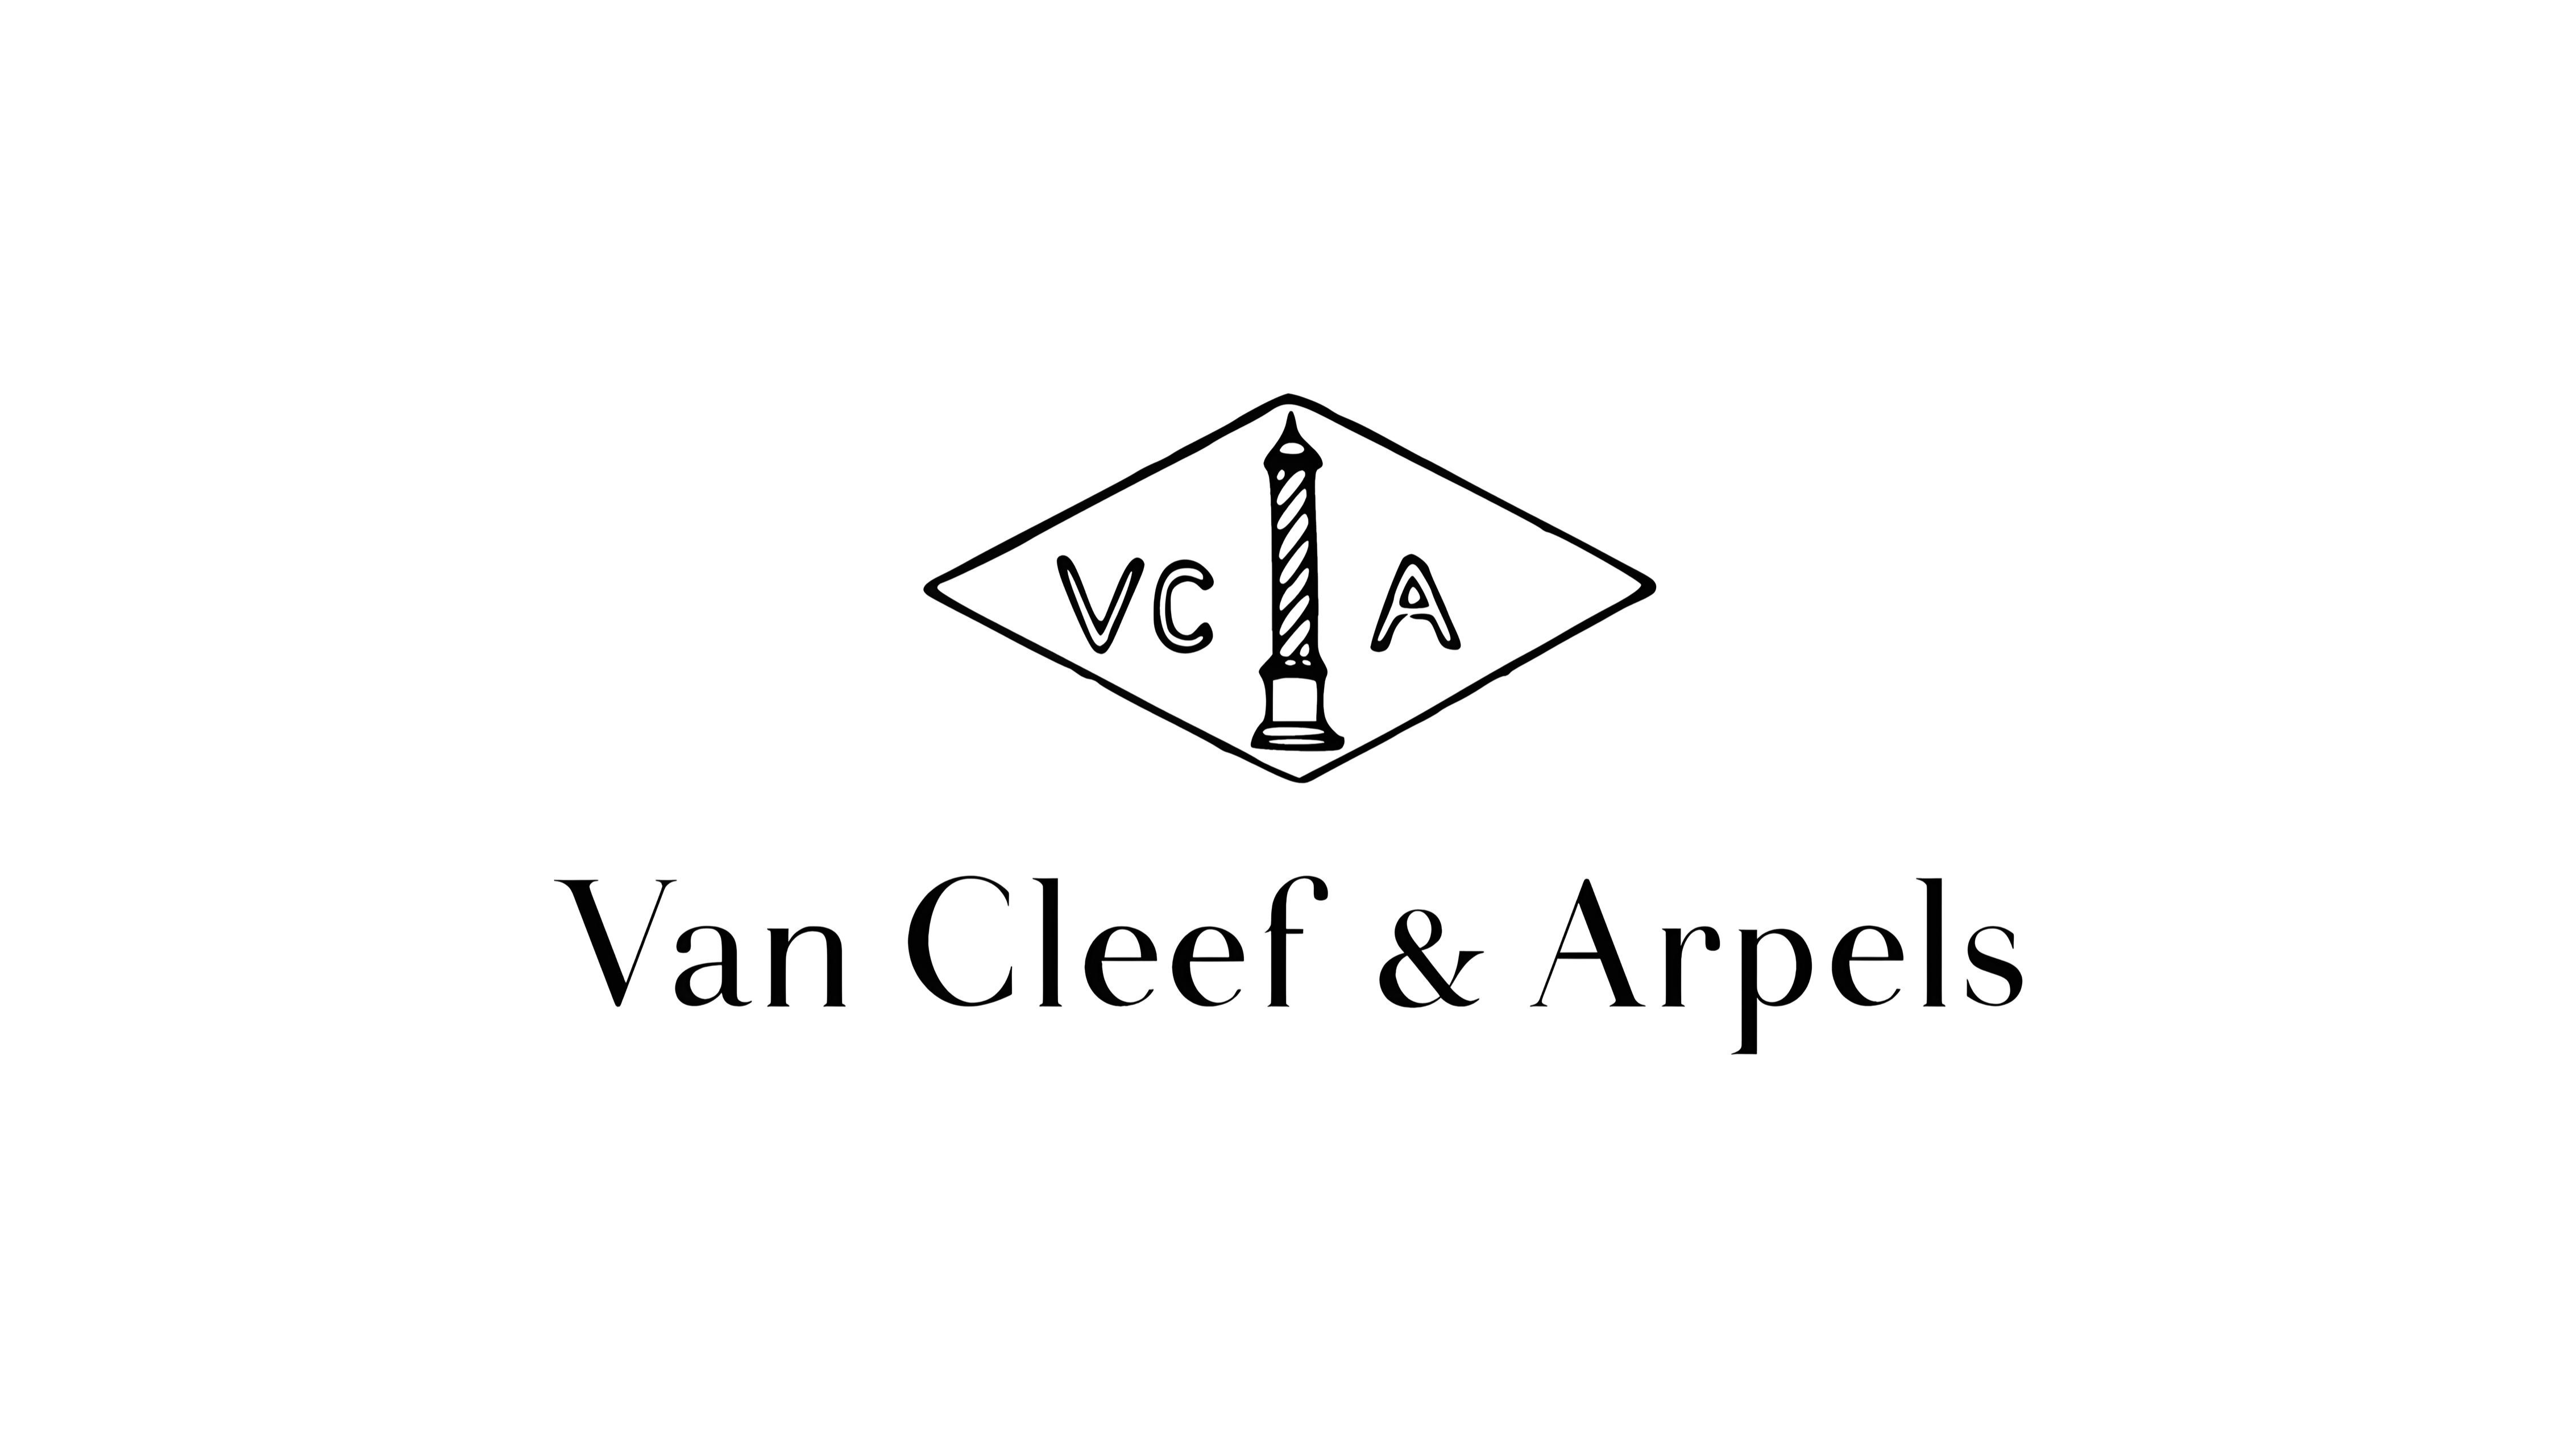 VAN CLEEF & ARPELS Parfum Damen & Herren